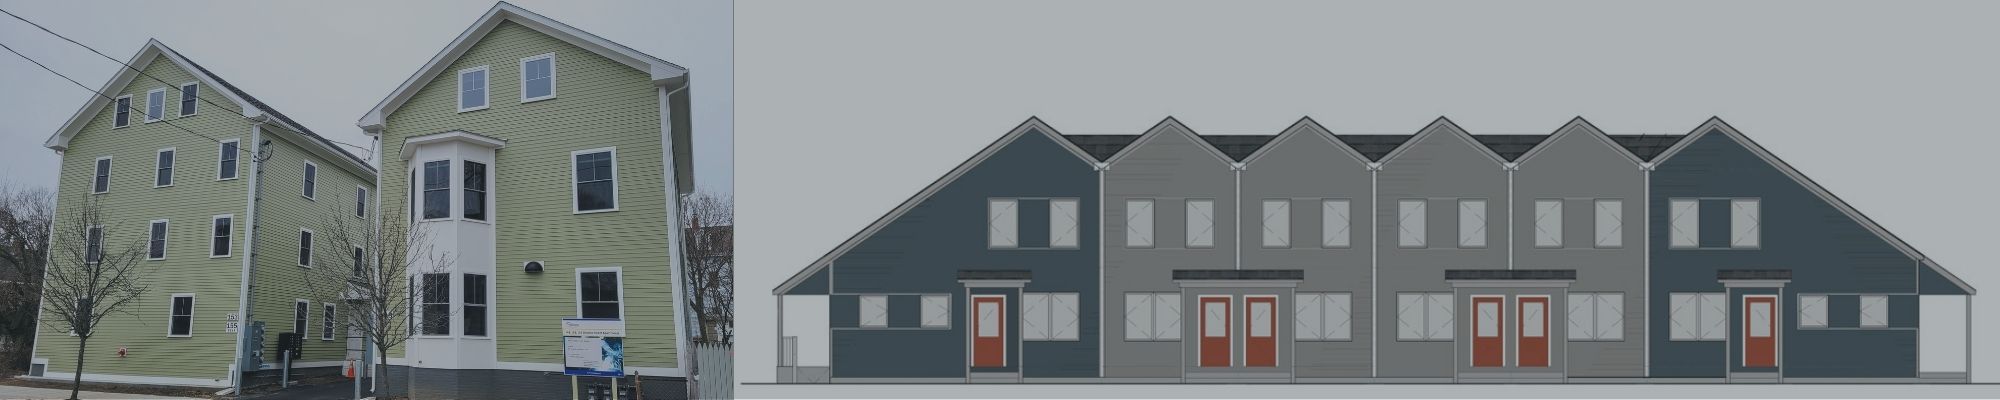 ONE Neighborhood Builders amplía la vivienda asequible con las promociones de Delaine y Bowdoin